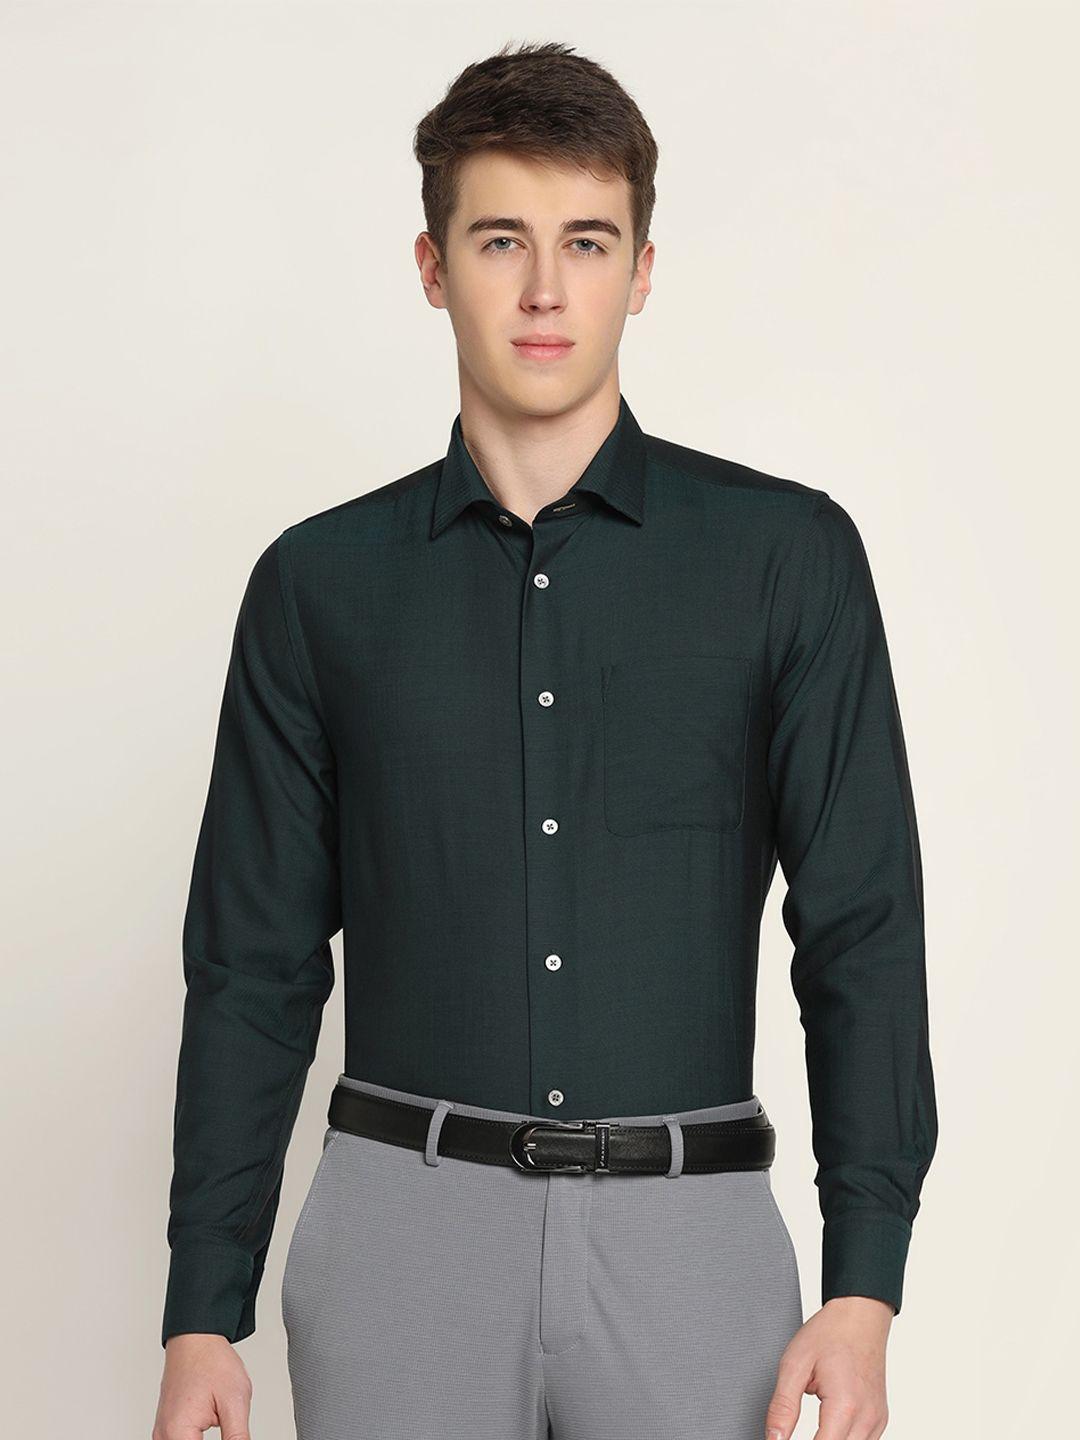 blackberrys slim fit pure cotton formal shirt